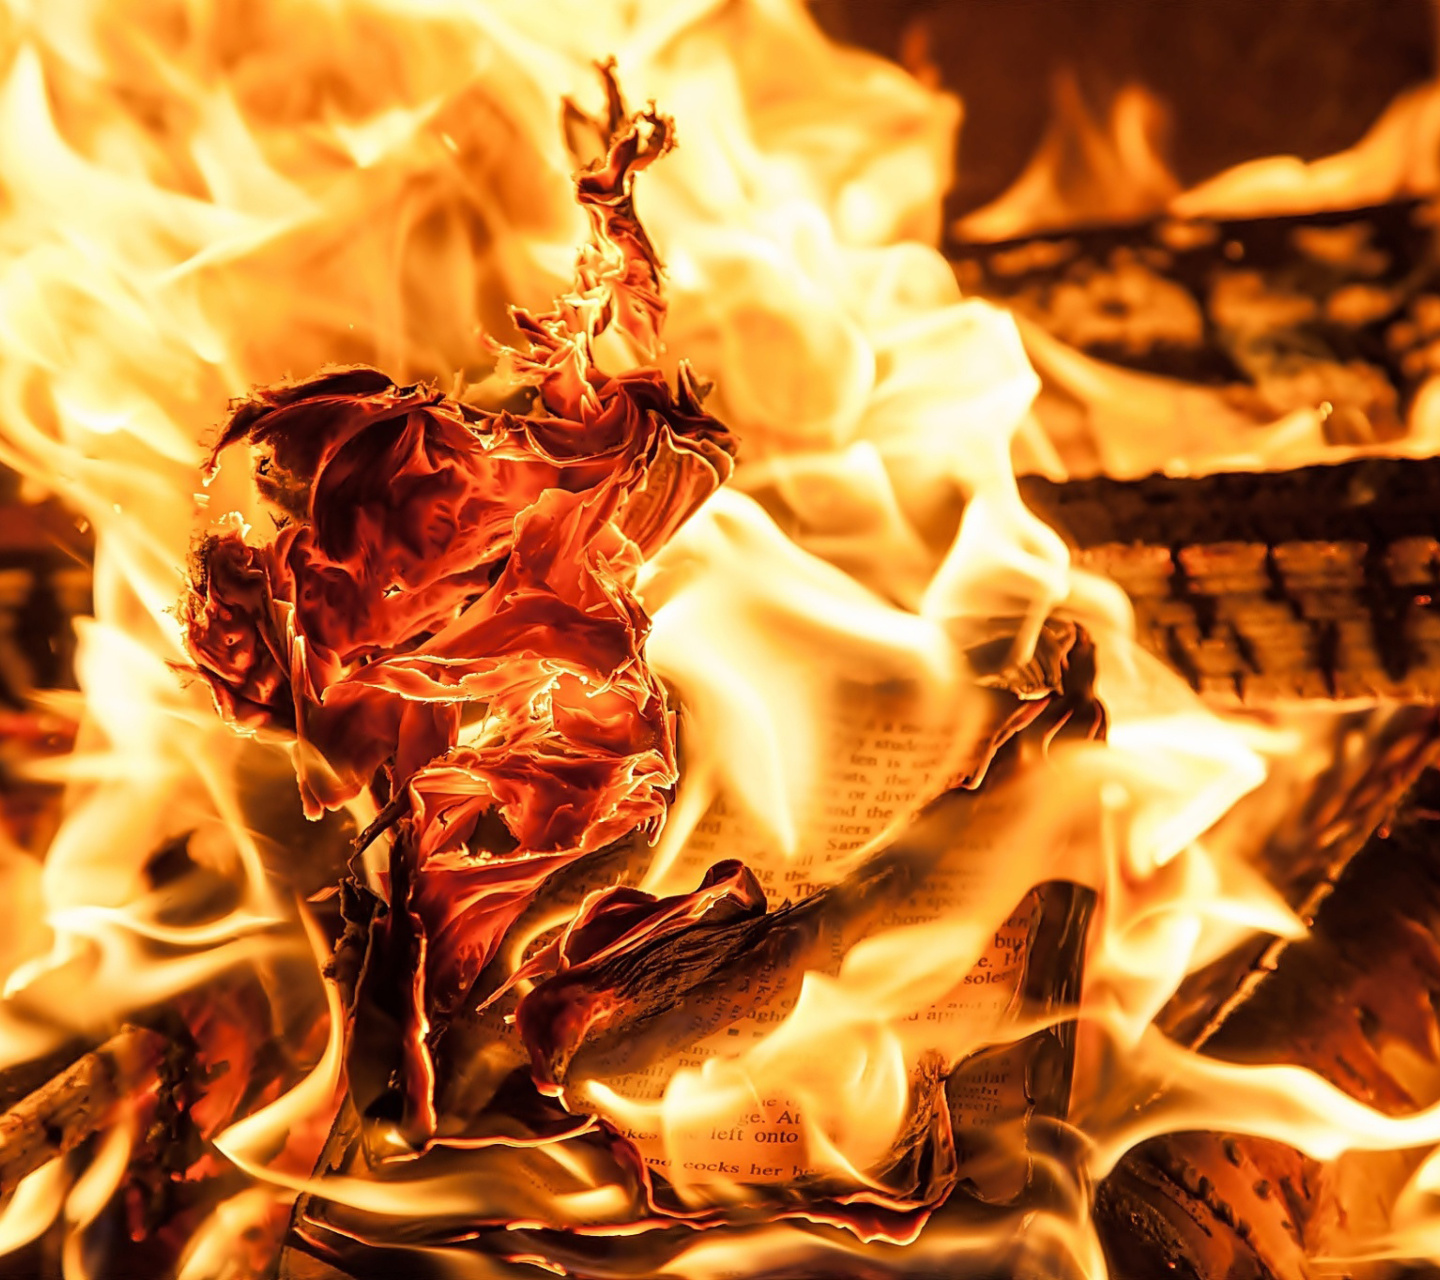 Sfondi Burn and flames 1440x1280